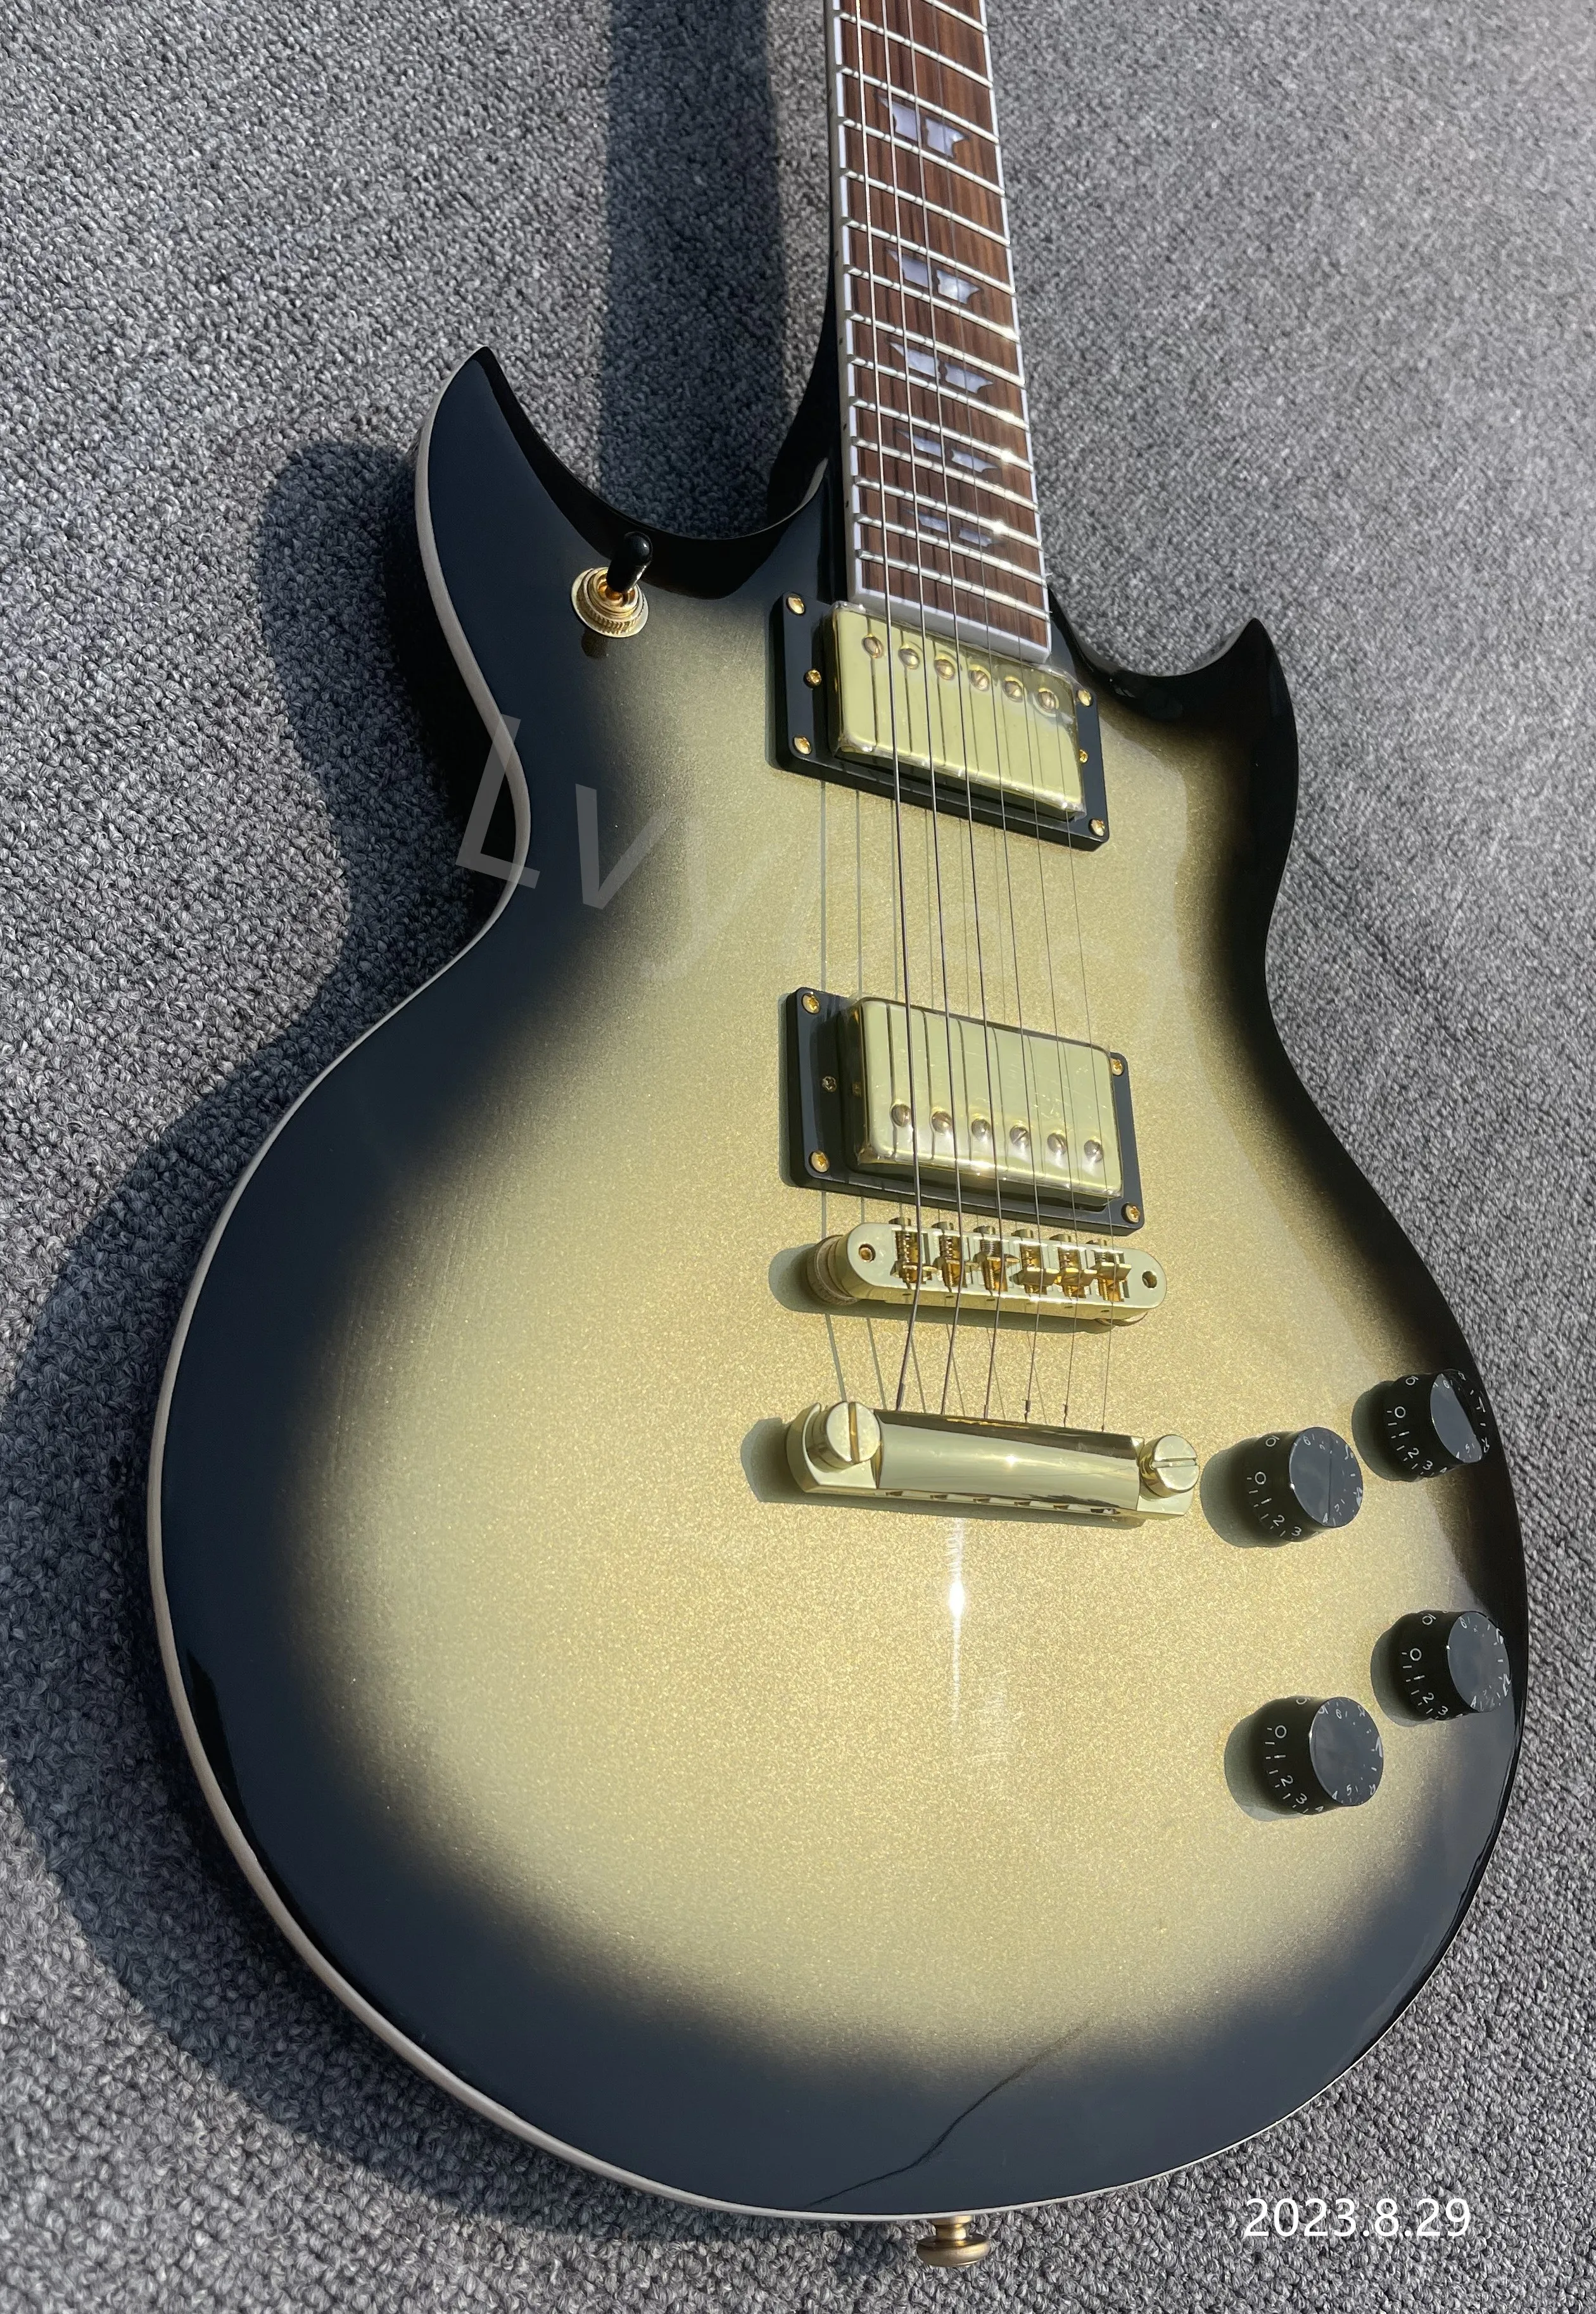 Elektro Gitar Gümüş Merkezi Siyah Kenar Patlama Altın Parçaları HH Manyetikler Hiçbir Pickguard TOM Köprü Ve Stop Kuyruk Gülağacı klavye Görüntü 2